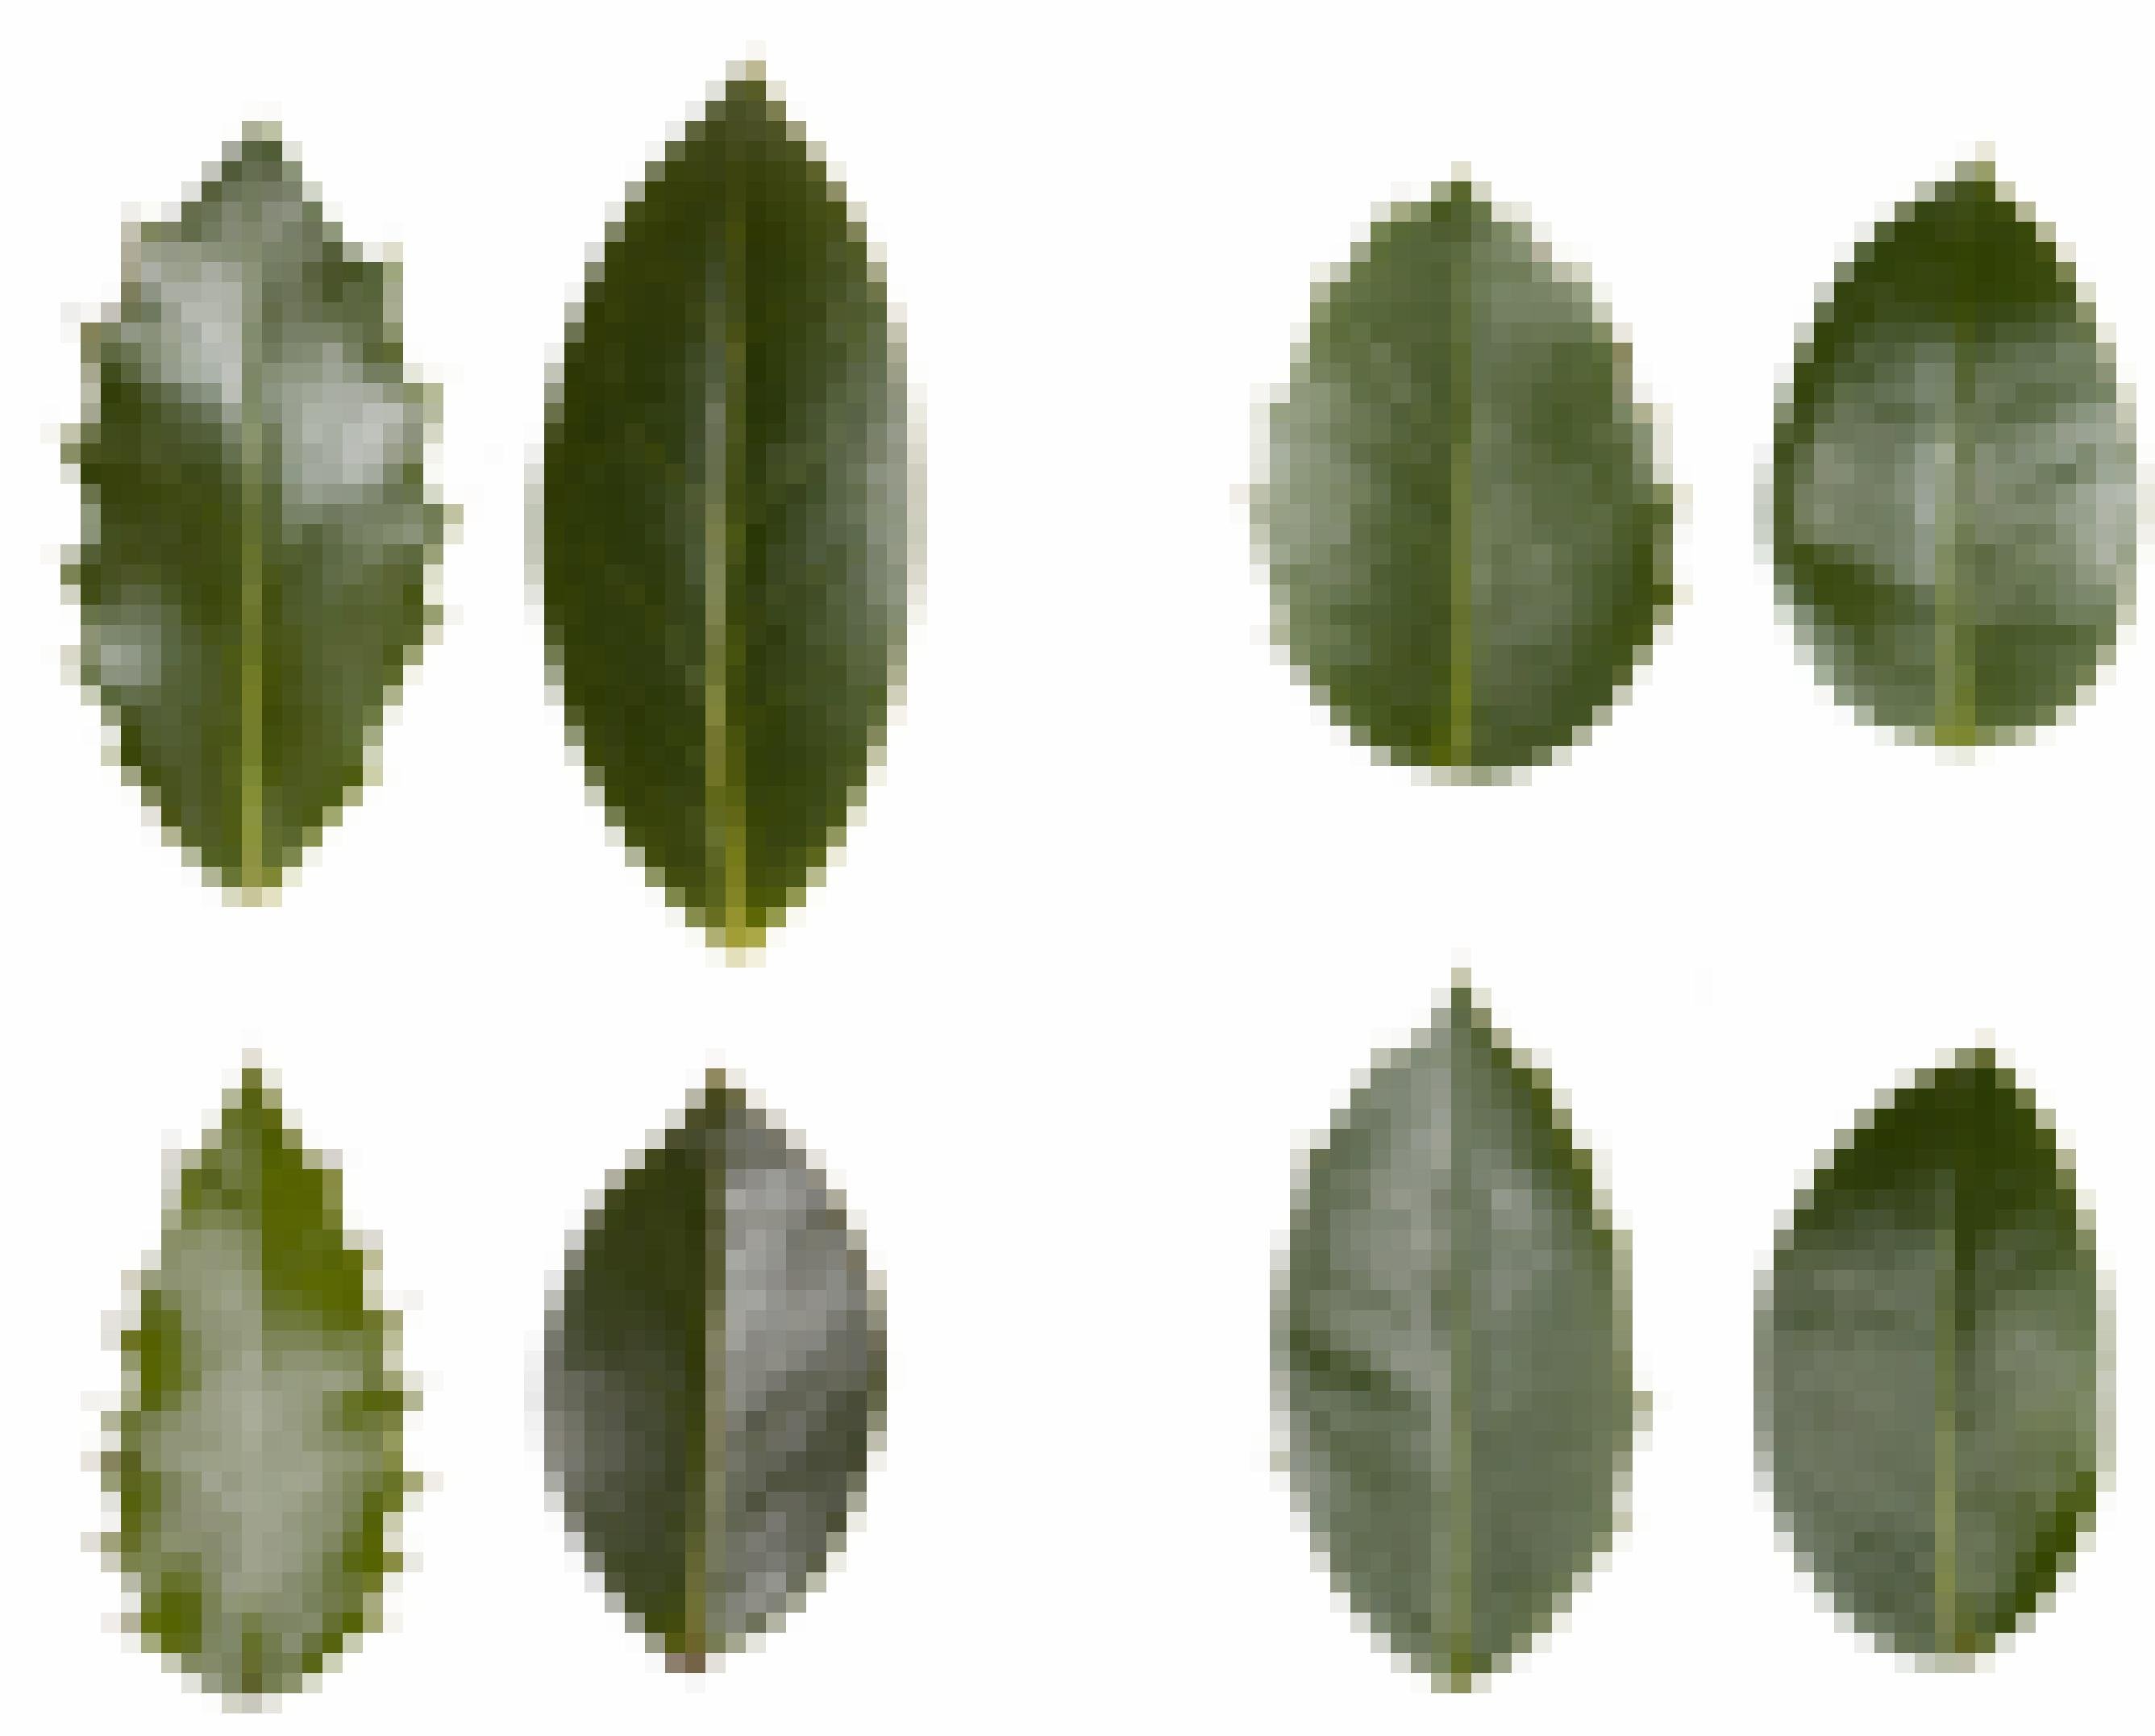 Grüne Blätter der Stechpalme auf weißem Grund. Manche sind länglich, andere etwas rundlicher. Vier Paare sind dargestellt. Jeweils links eines mit Stacheln am Rand und rechts eines ohne Stacheln.